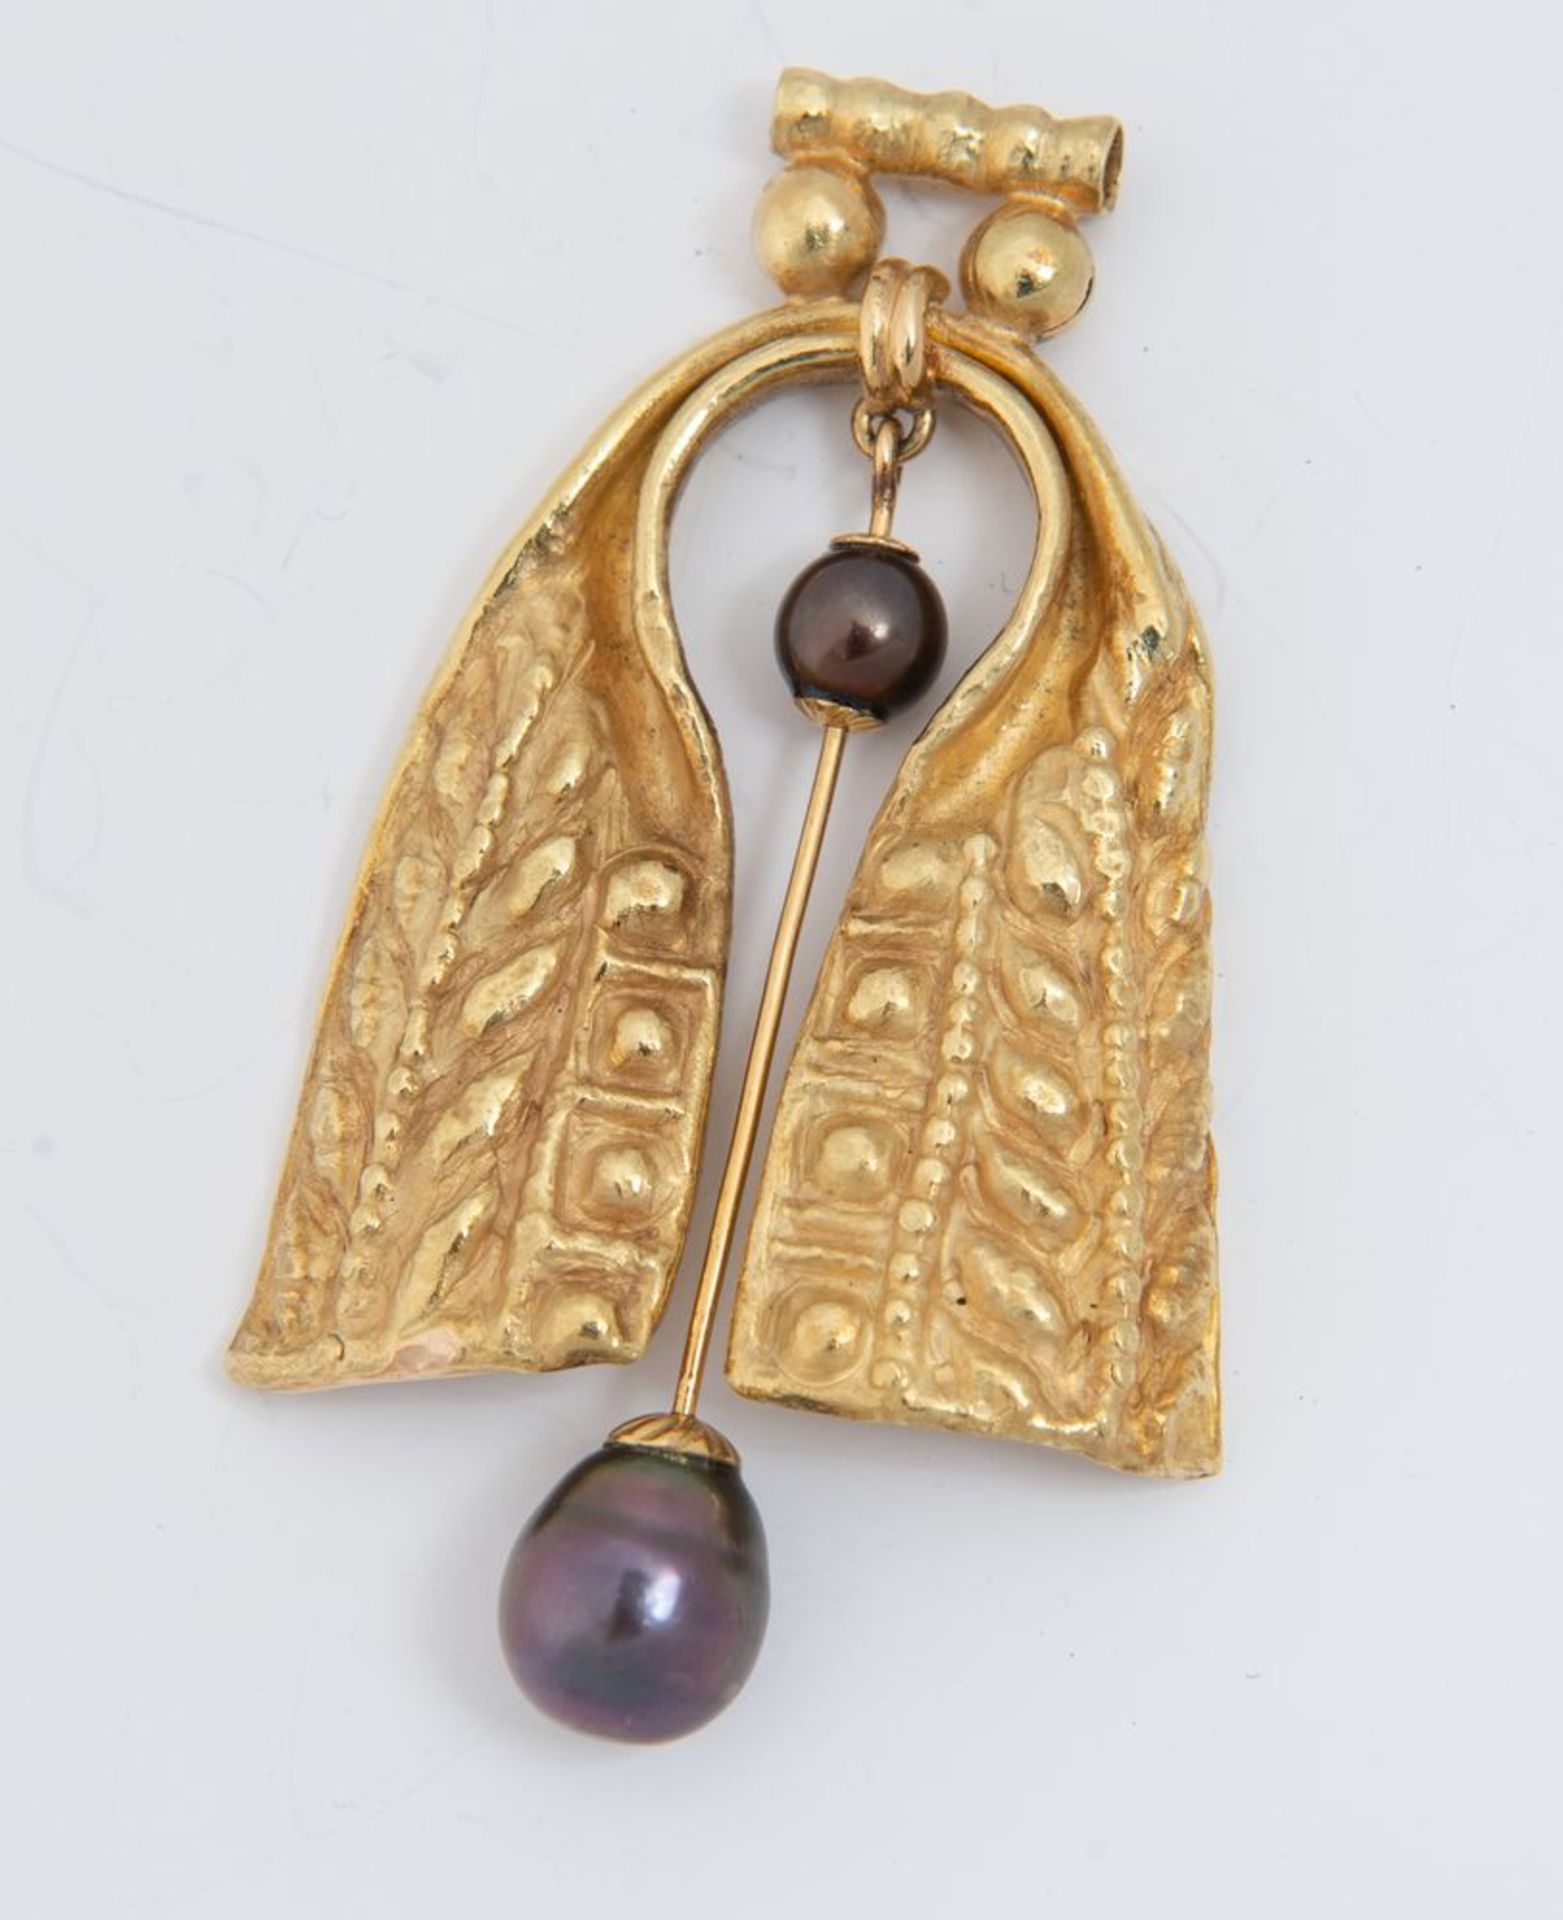 Pendente in oro e perle.
In oro sbalzato e inciso, al centro elemento snodato decorato con due perle - Bild 2 aus 3